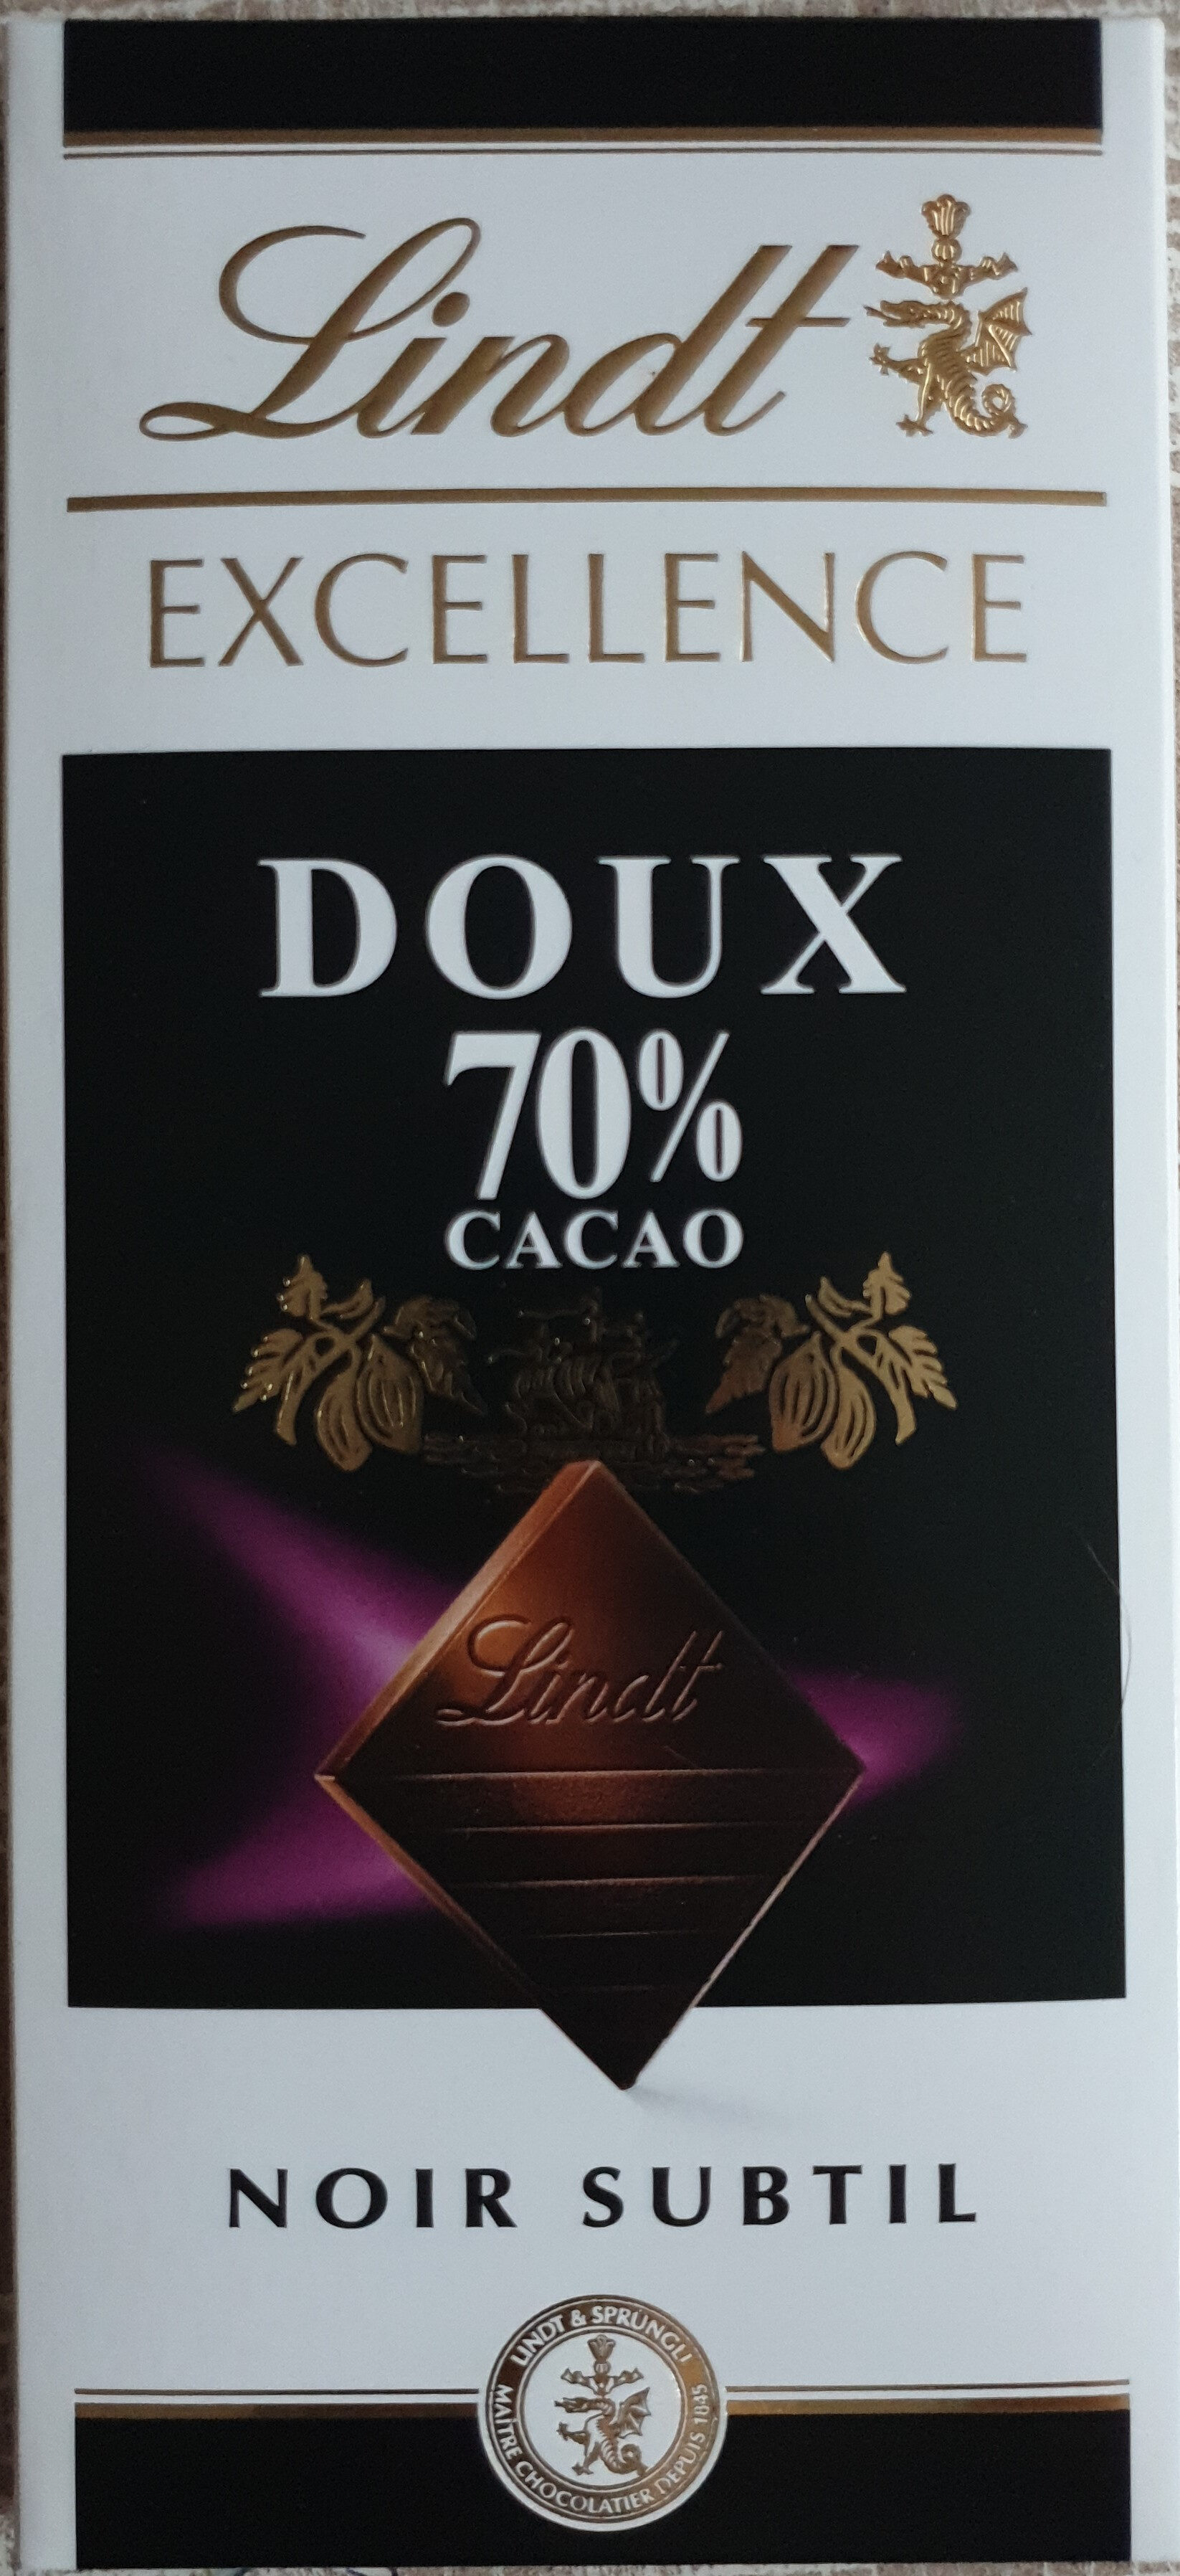 Schokolade 70%, Cacao - Produkt - en